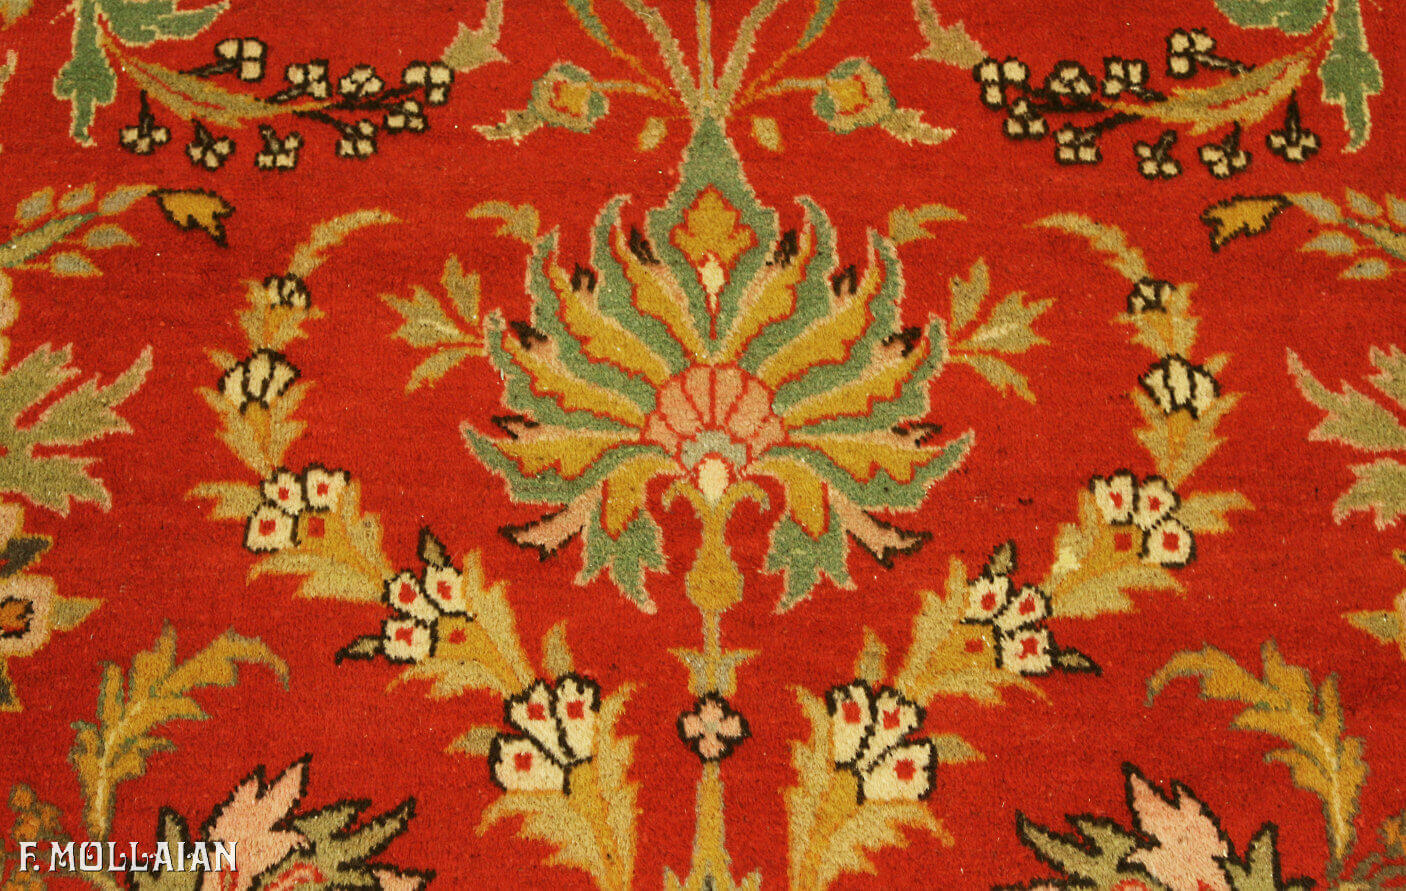 Antique Persian Mahal Carpet n°:39706704